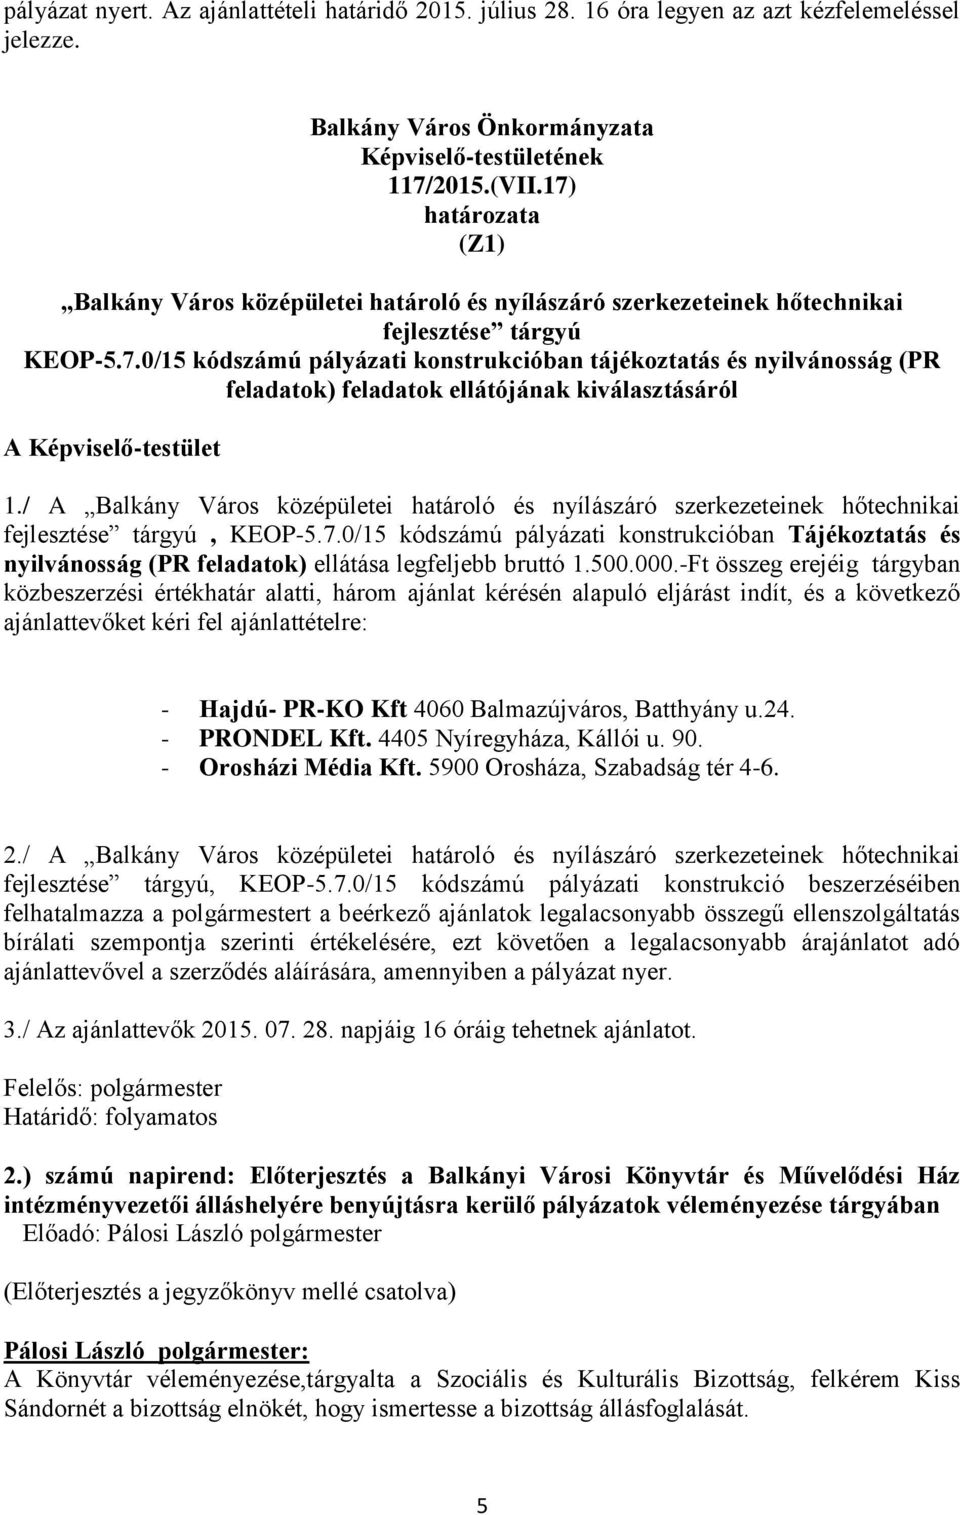 / A Balkány Város középületei határoló és nyílászáró szerkezeteinek hőtechnikai fejlesztése tárgyú, KEOP-5.7.